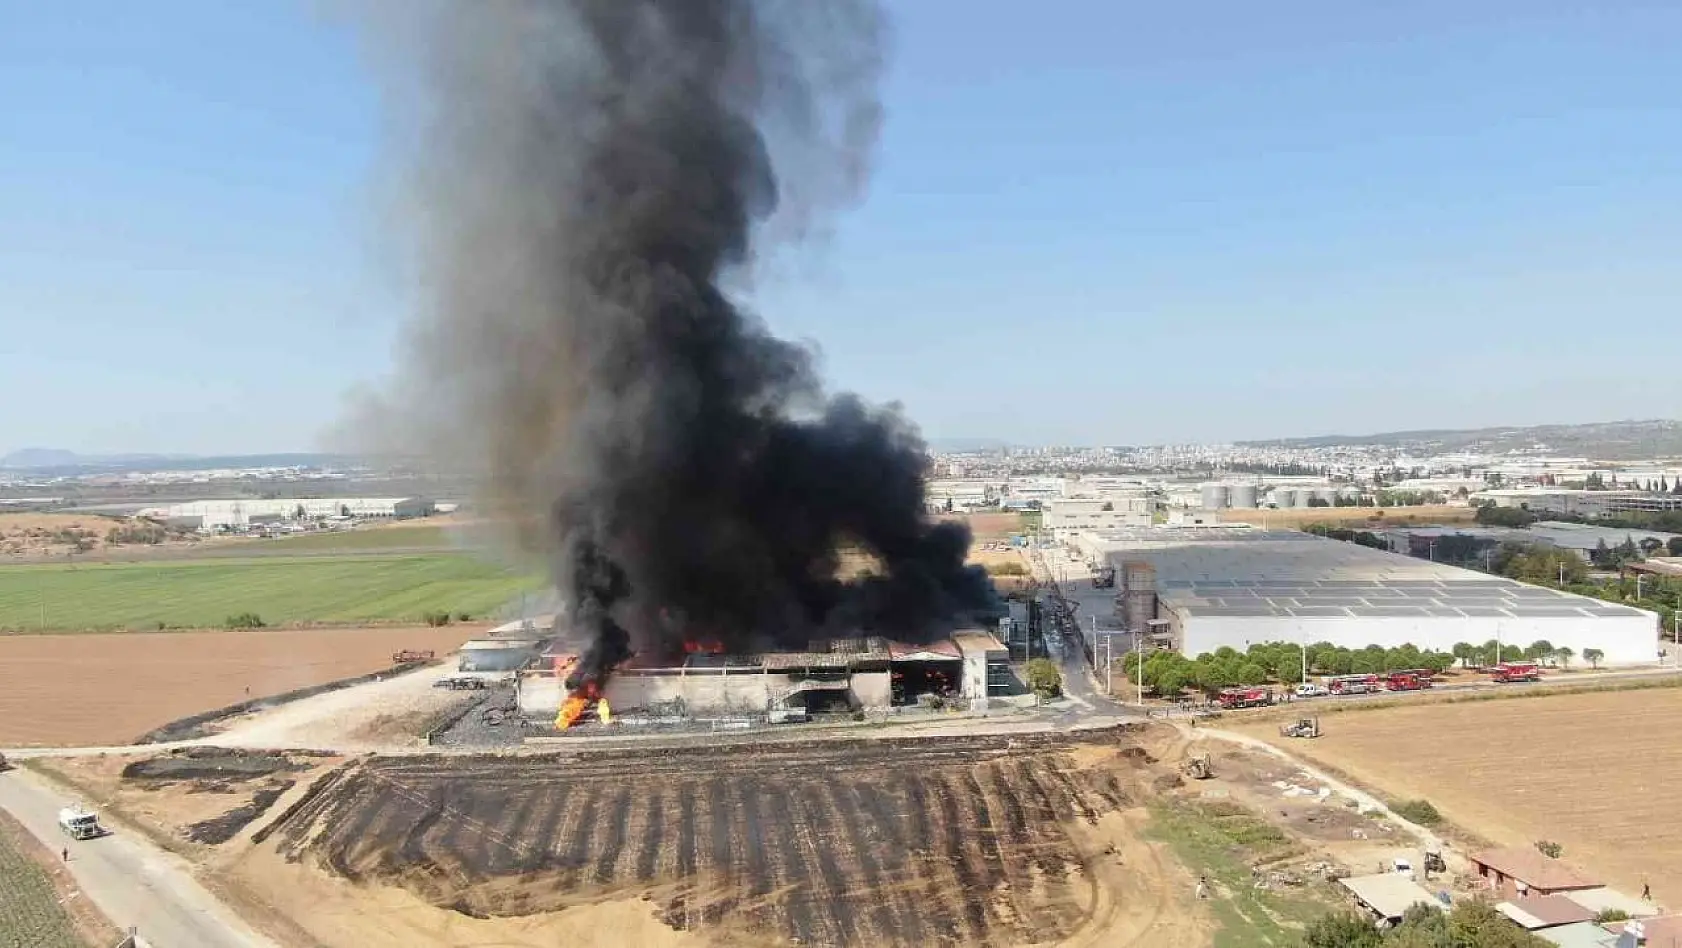 İzmir'in Torbalı ilçesinde bulunan bir fabrikada yangın çıktı. Yangına çok sayıda itfaiye sevk edildi.